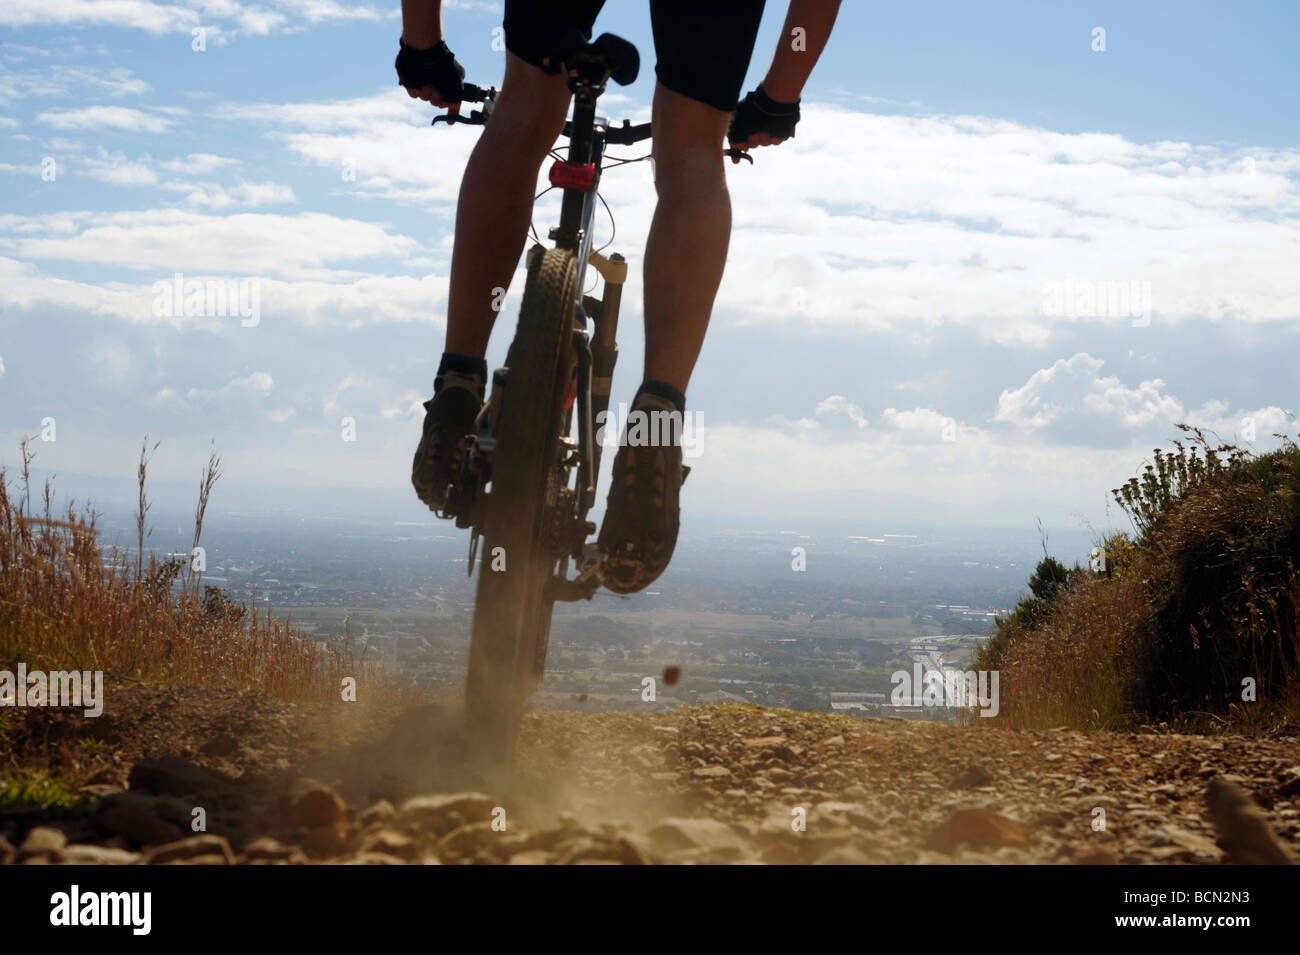 Mountain bike rider on mountain Stock Photo